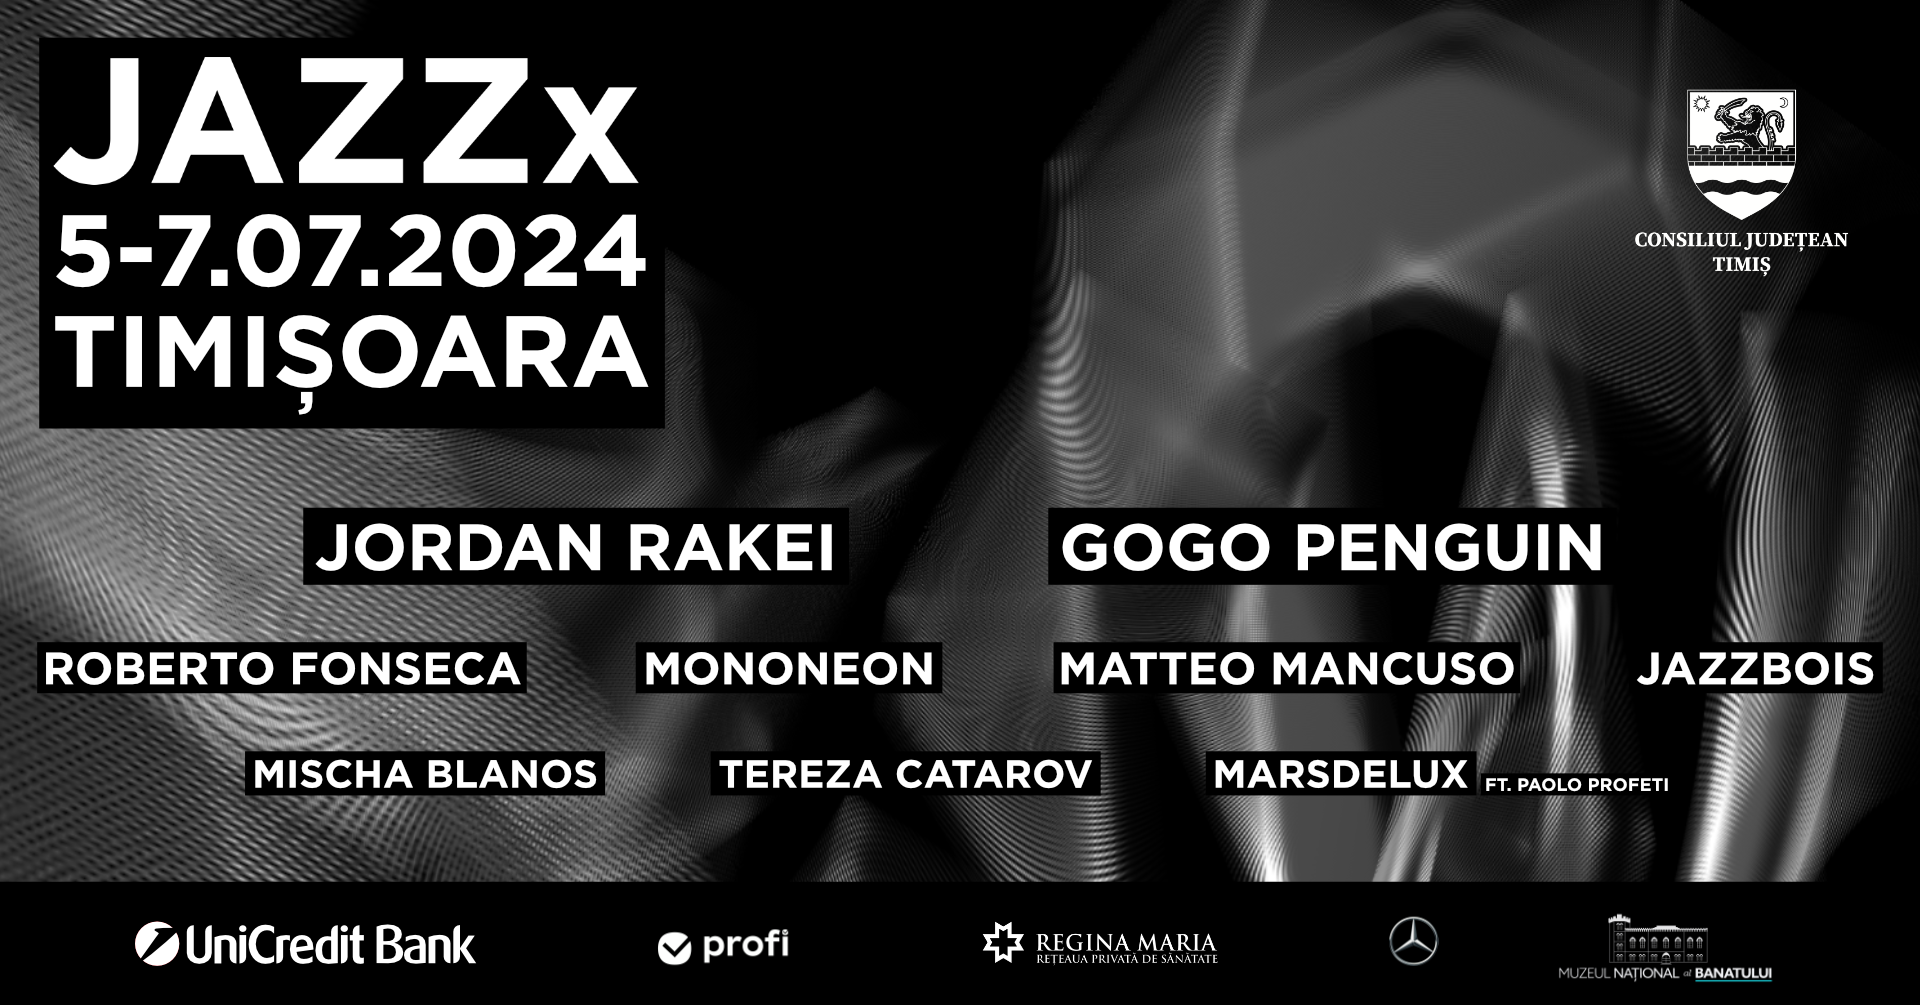 JAZZx 2024 Line-up